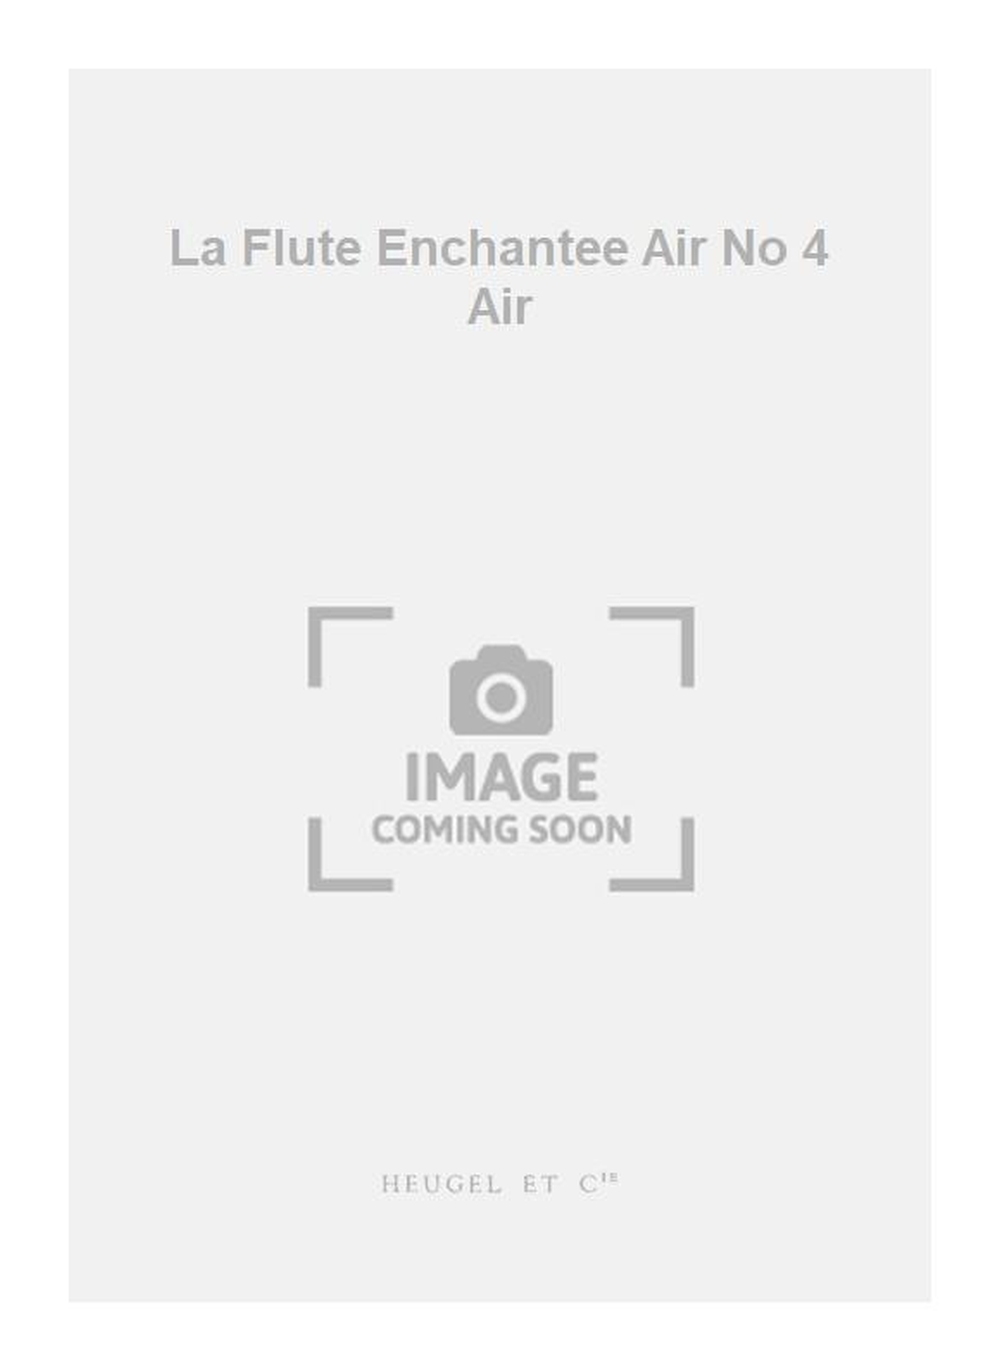 Wolfgang Amadeus Mozart: La Flute Enchantee Air No 4 Air